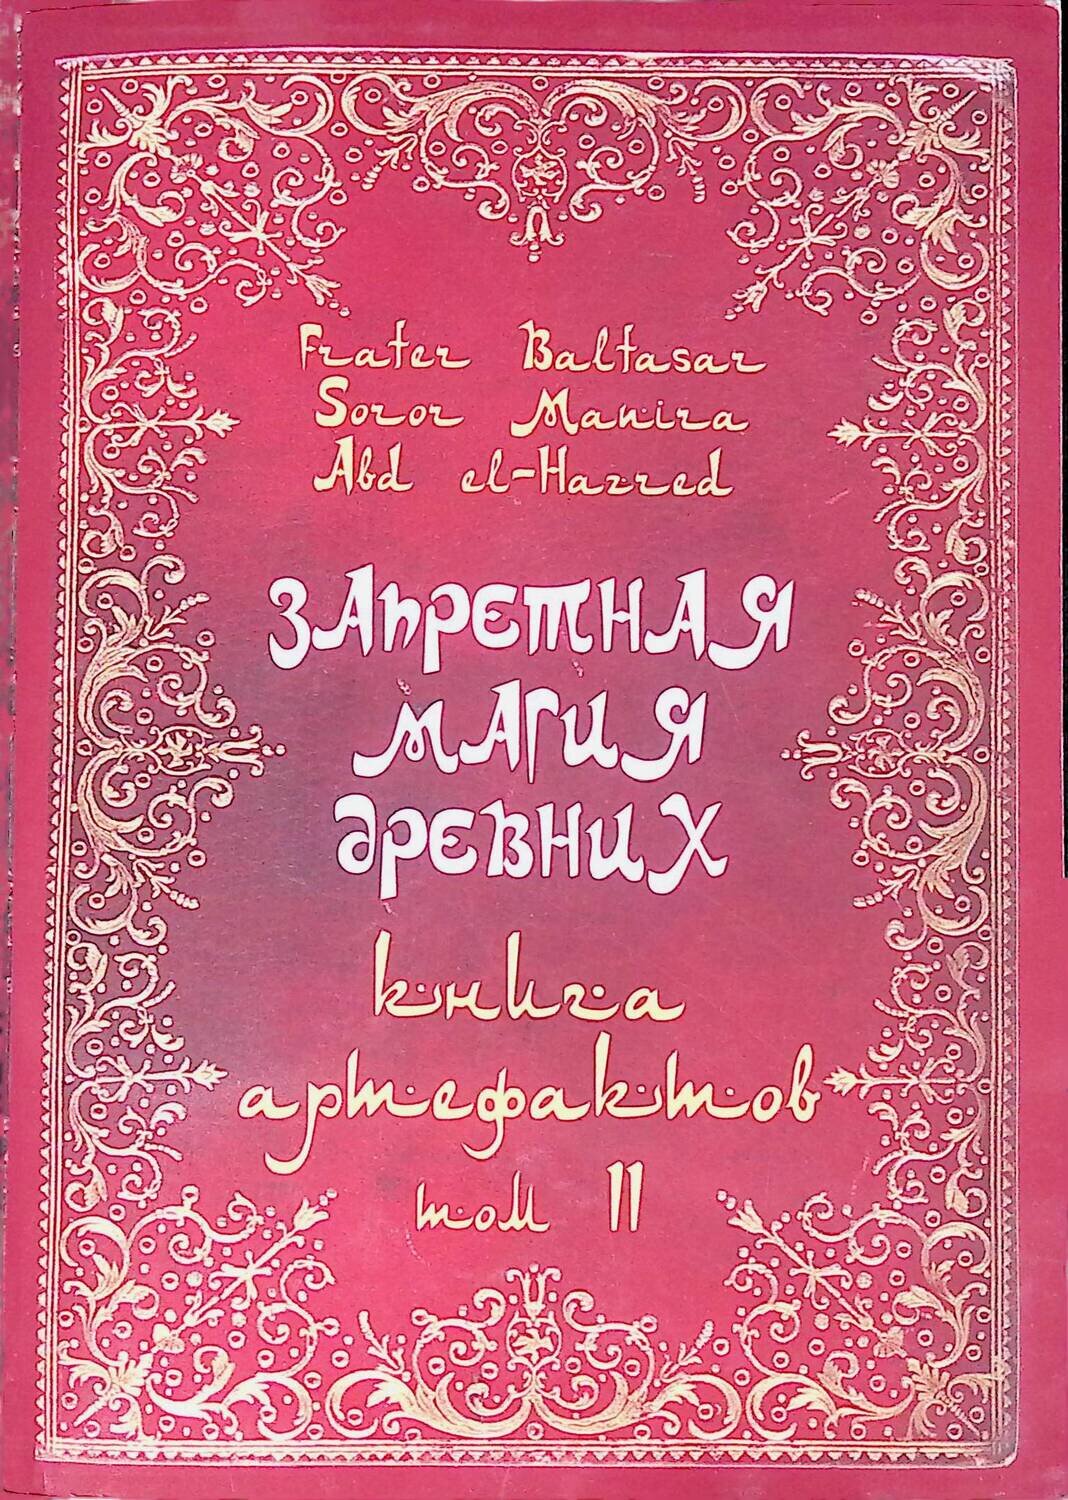 Запретная магия древних. Том II. Книга артефактов; Baltasar Frater, Manira Soror, el-Hazred Abd